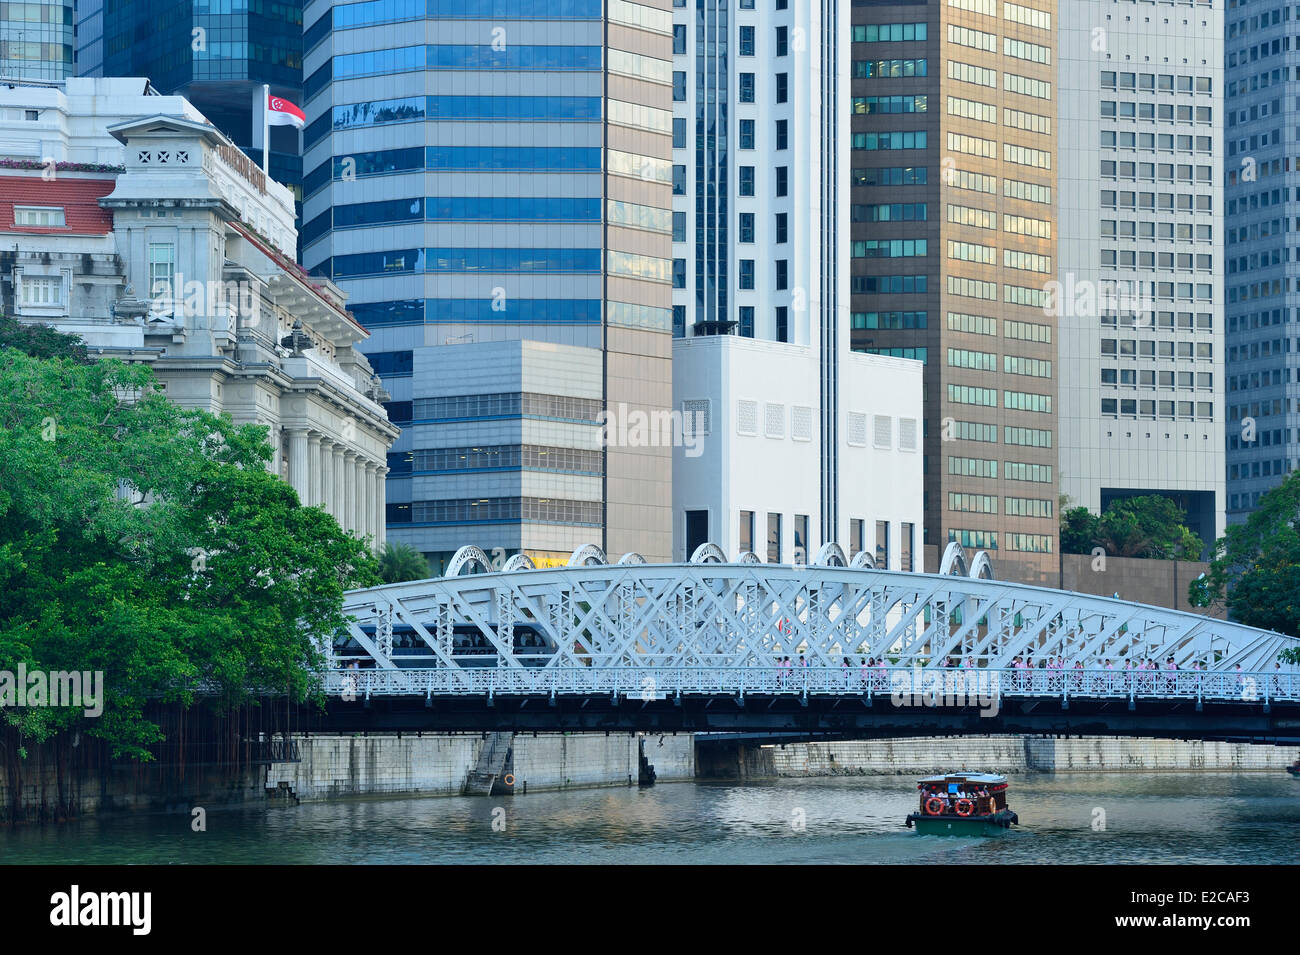 Singapur, ersetzt die Anderson-Brücke über den Singapore River im Jahre 1910 gebaut die Cavenagh Brücke jetzt Fußgänger Stockfoto